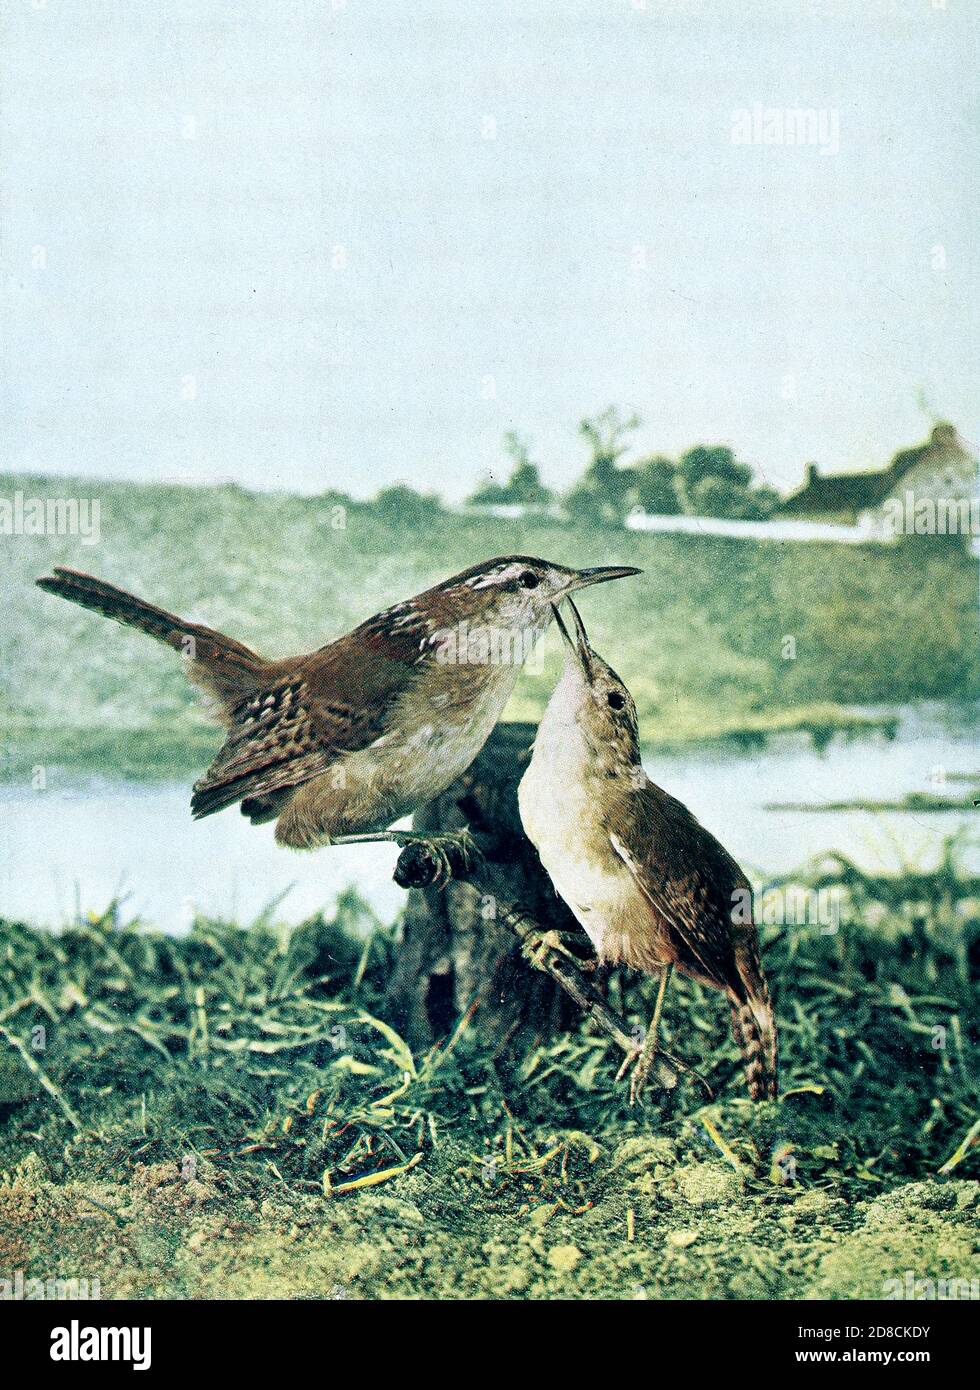 Der Sumpfzapfen (Cistothorus palustris) ist ein kleiner nordamerikanischer singvogel der Familie der Zaunkönige. Es wird manchmal die lang-abgerechnet Sumpfwren von Birds genannt : illustriert durch Farbfotografie : eine monatliche Serie. Kenntnisse von Bird-Life Vol. 1 Nr. 4 April 1897 Stockfoto